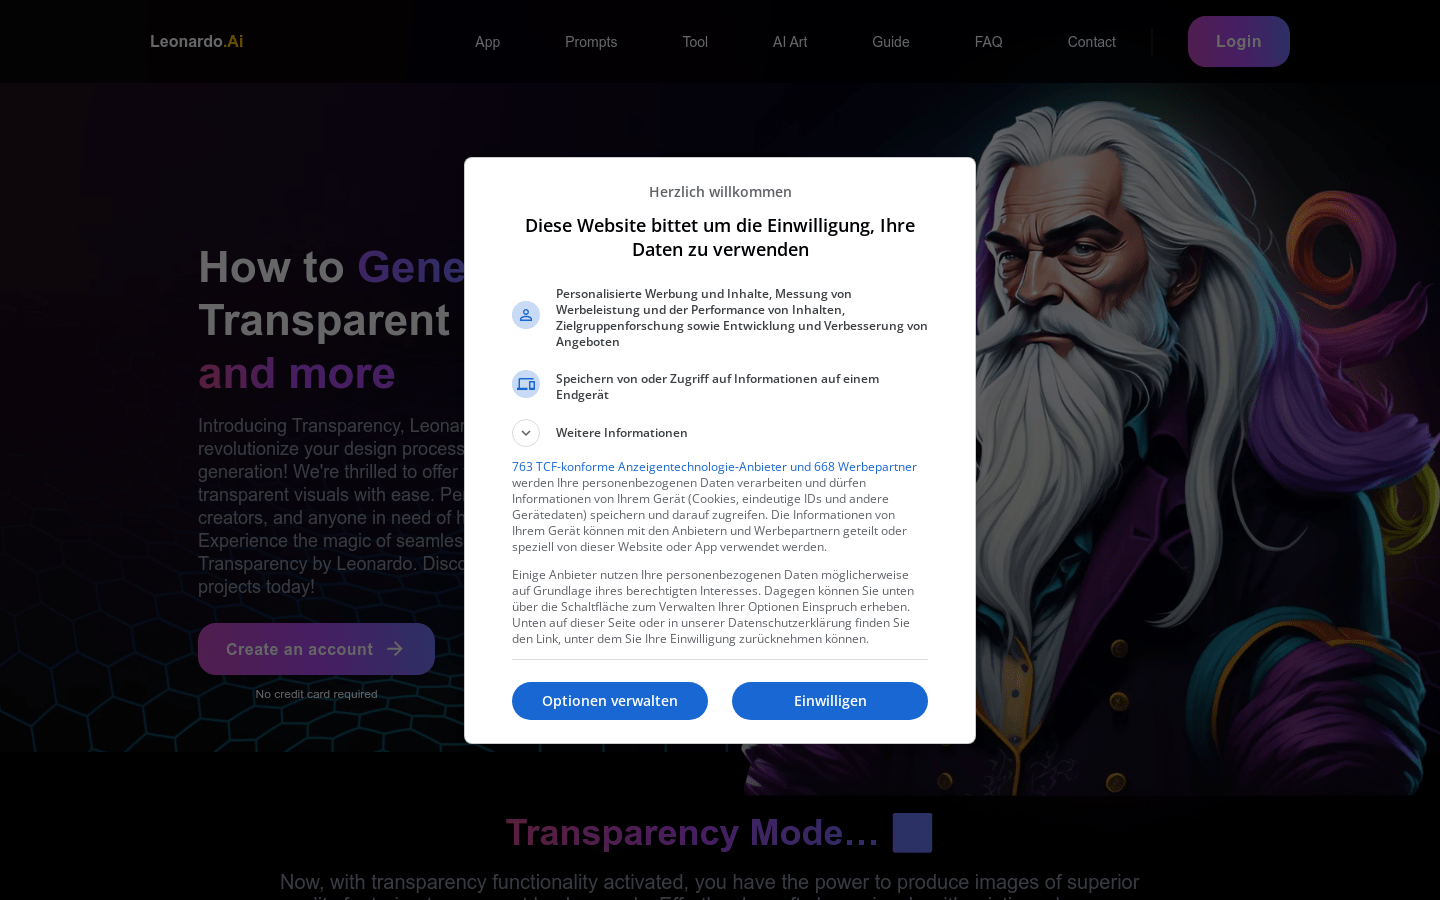 Leonardo AI Transparency